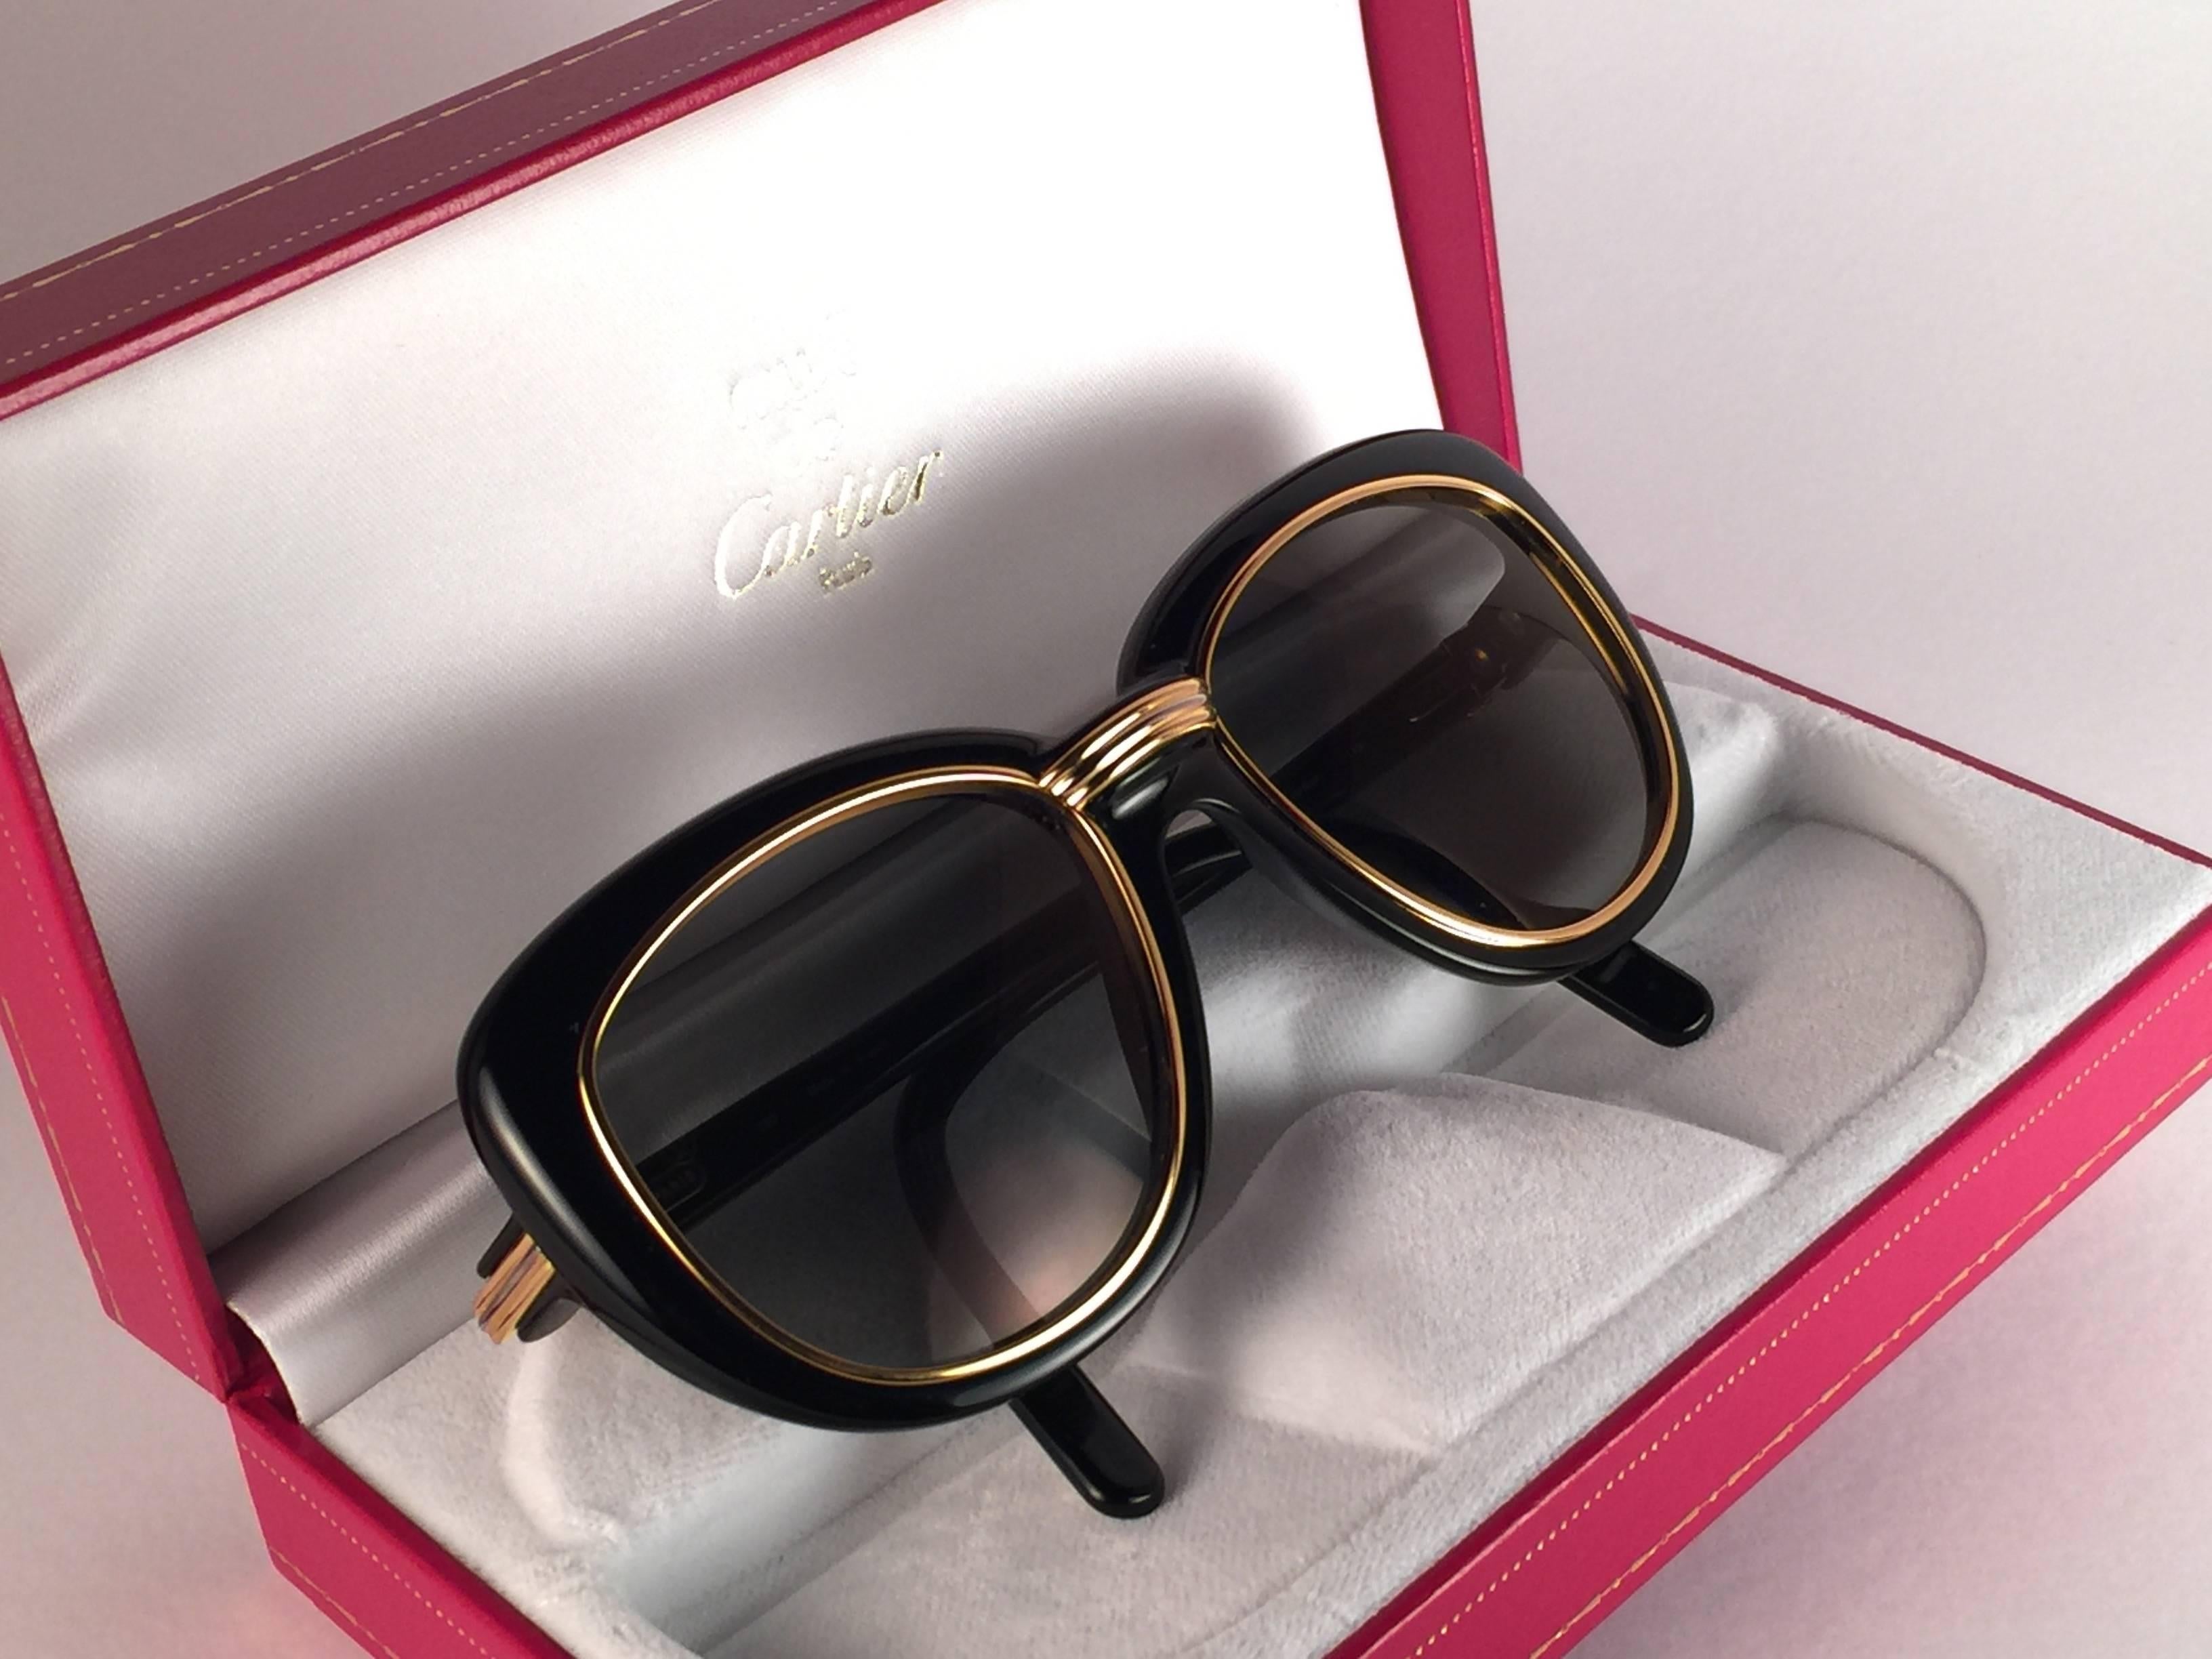 Neu Cartier Conquete Sonnenbrille mit grauem leichten Goldspiegel (UV-Schutz) Gläser. Einsätze und Akzente aus Gelb- und Weißgold.  Alle Markenzeichen.  Beide Arme tragen das C von Cartier auf der Schläfe.  Mit dem Rahmen aus 18 Karat Gold und den